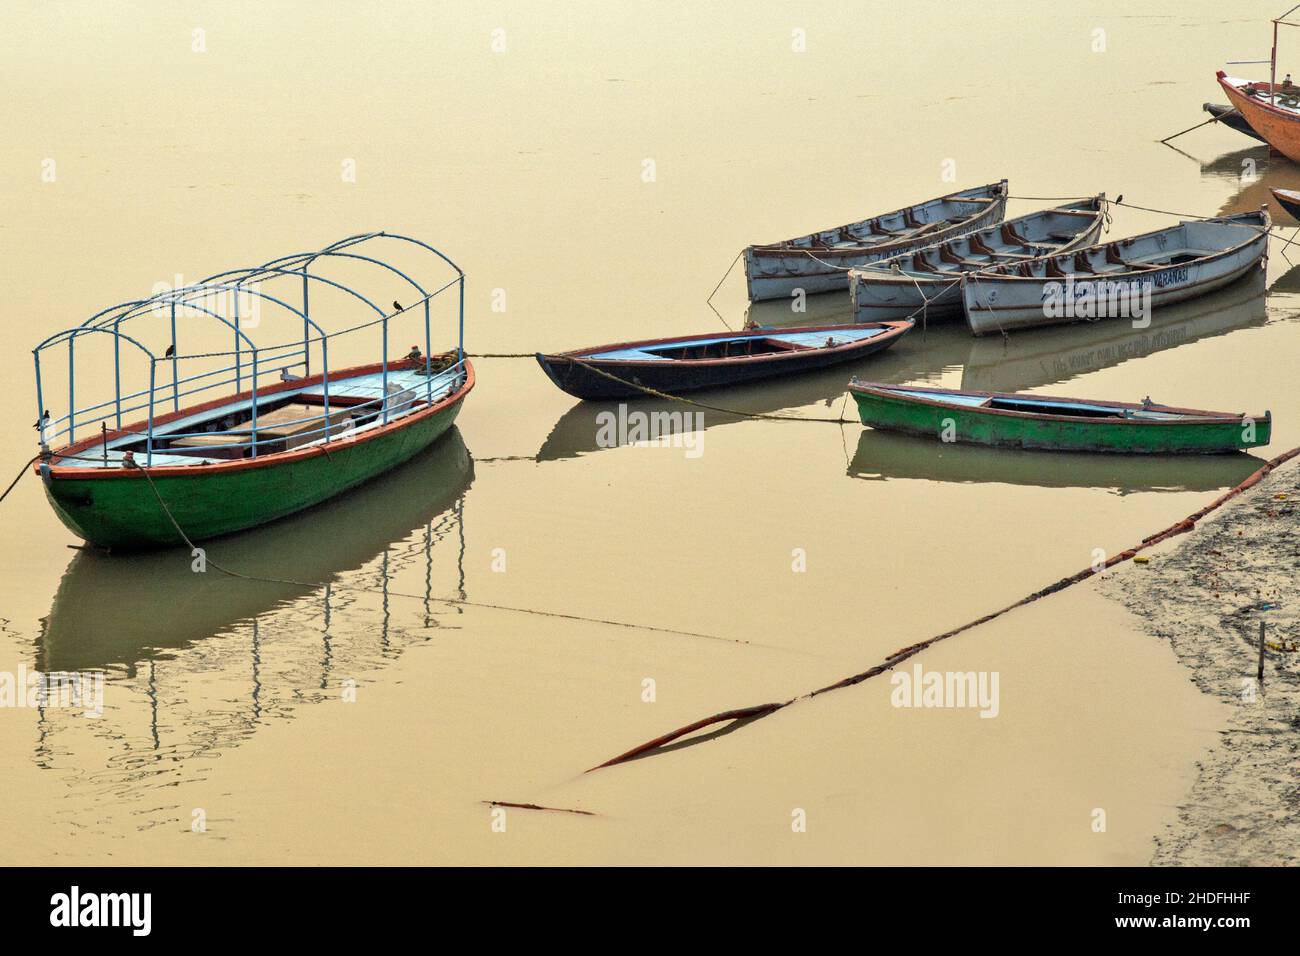 immagine della barca turistica riflessione sul fiume ganga a varanasi uttar pradesh india. Foto Stock